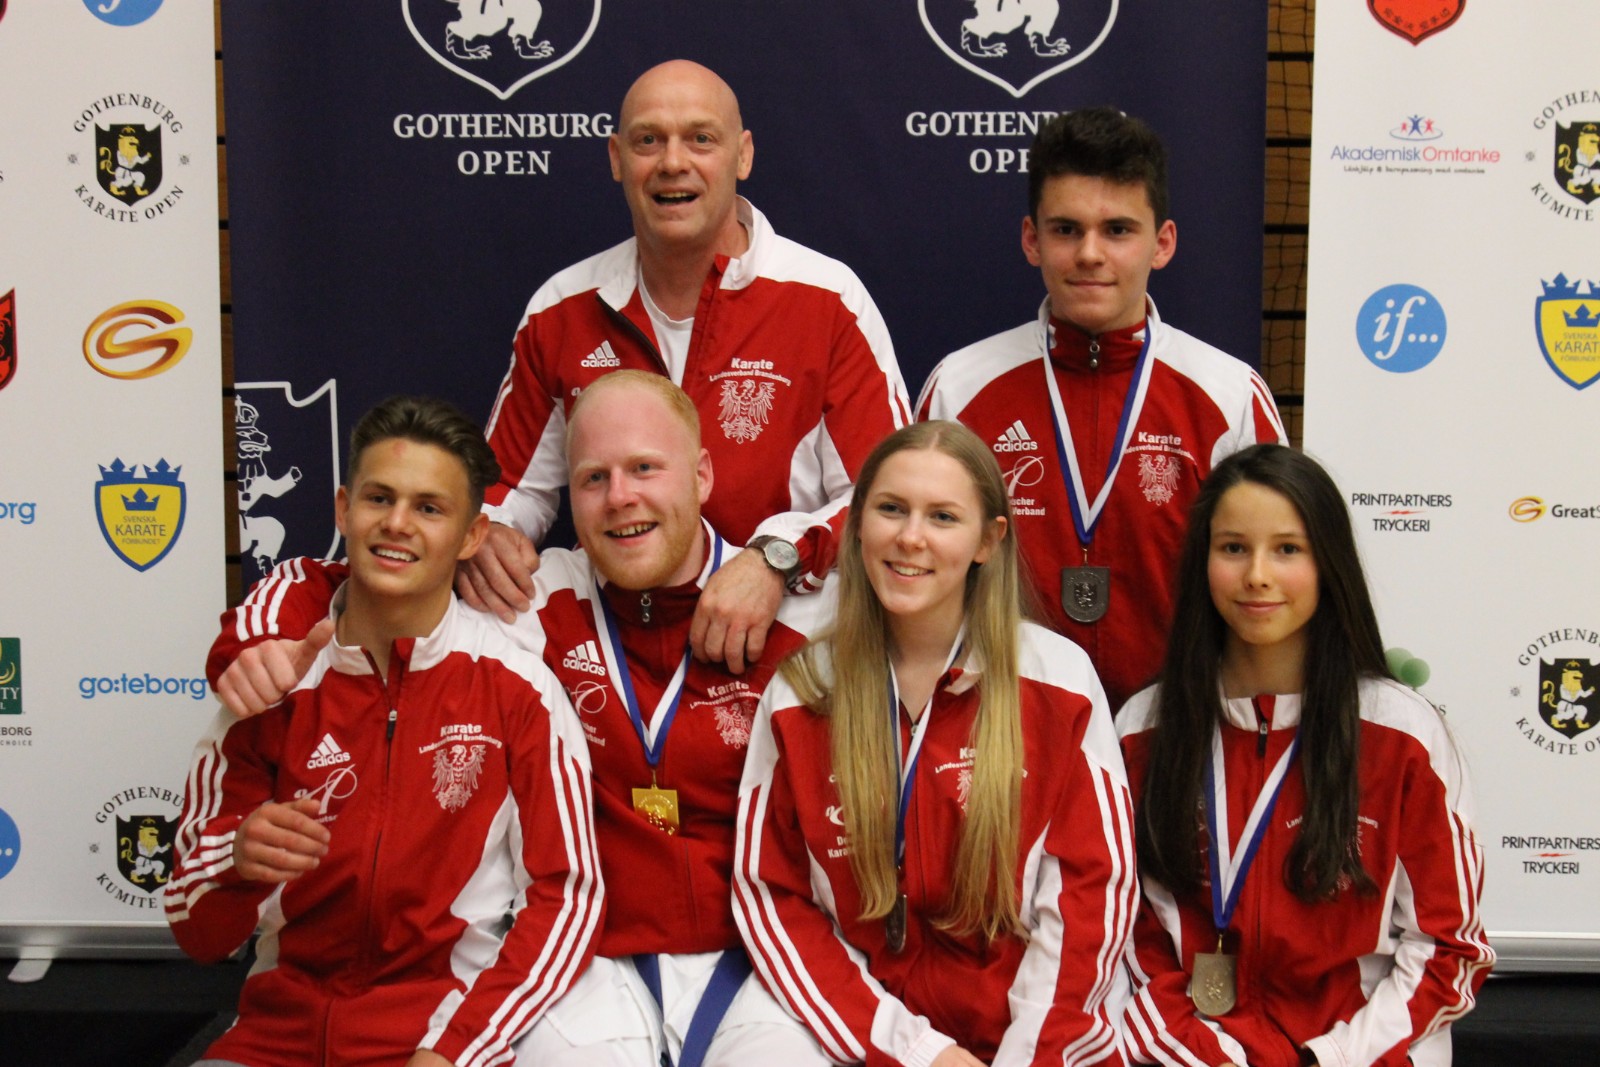 Siegerehrung (v. links oben: Bodo Pippel, Florian Misera; v. links unten: Georgio Schmidt, Marvin und Gina-Marie Mauer und Michelle Süß)